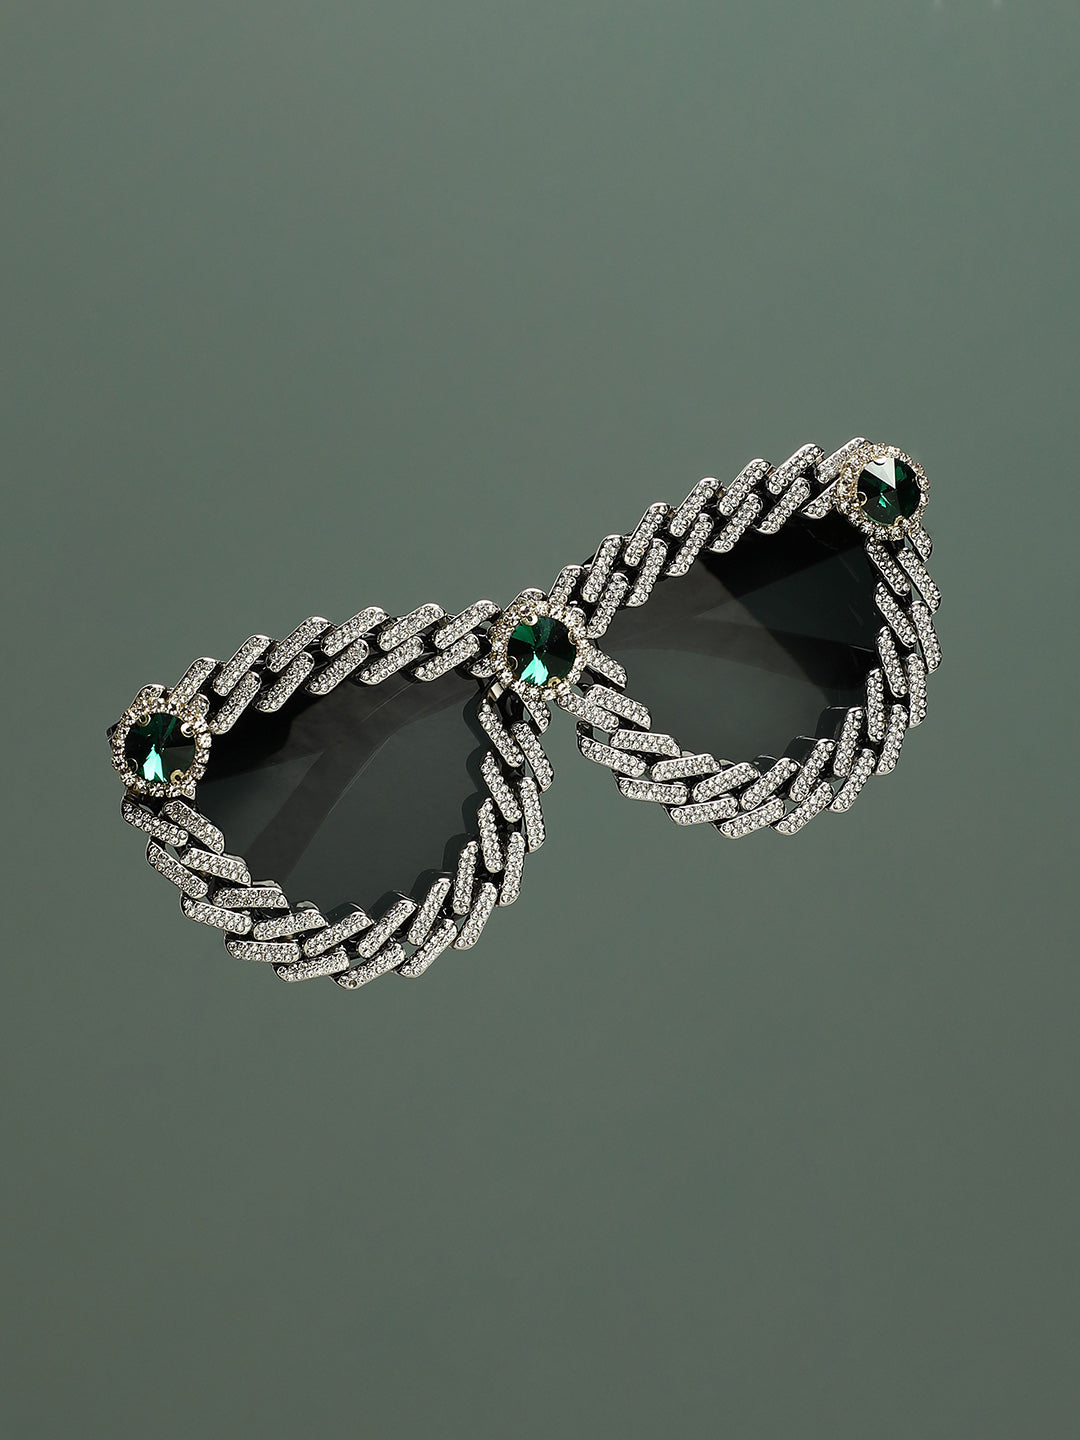 Jeweled Sunglasses